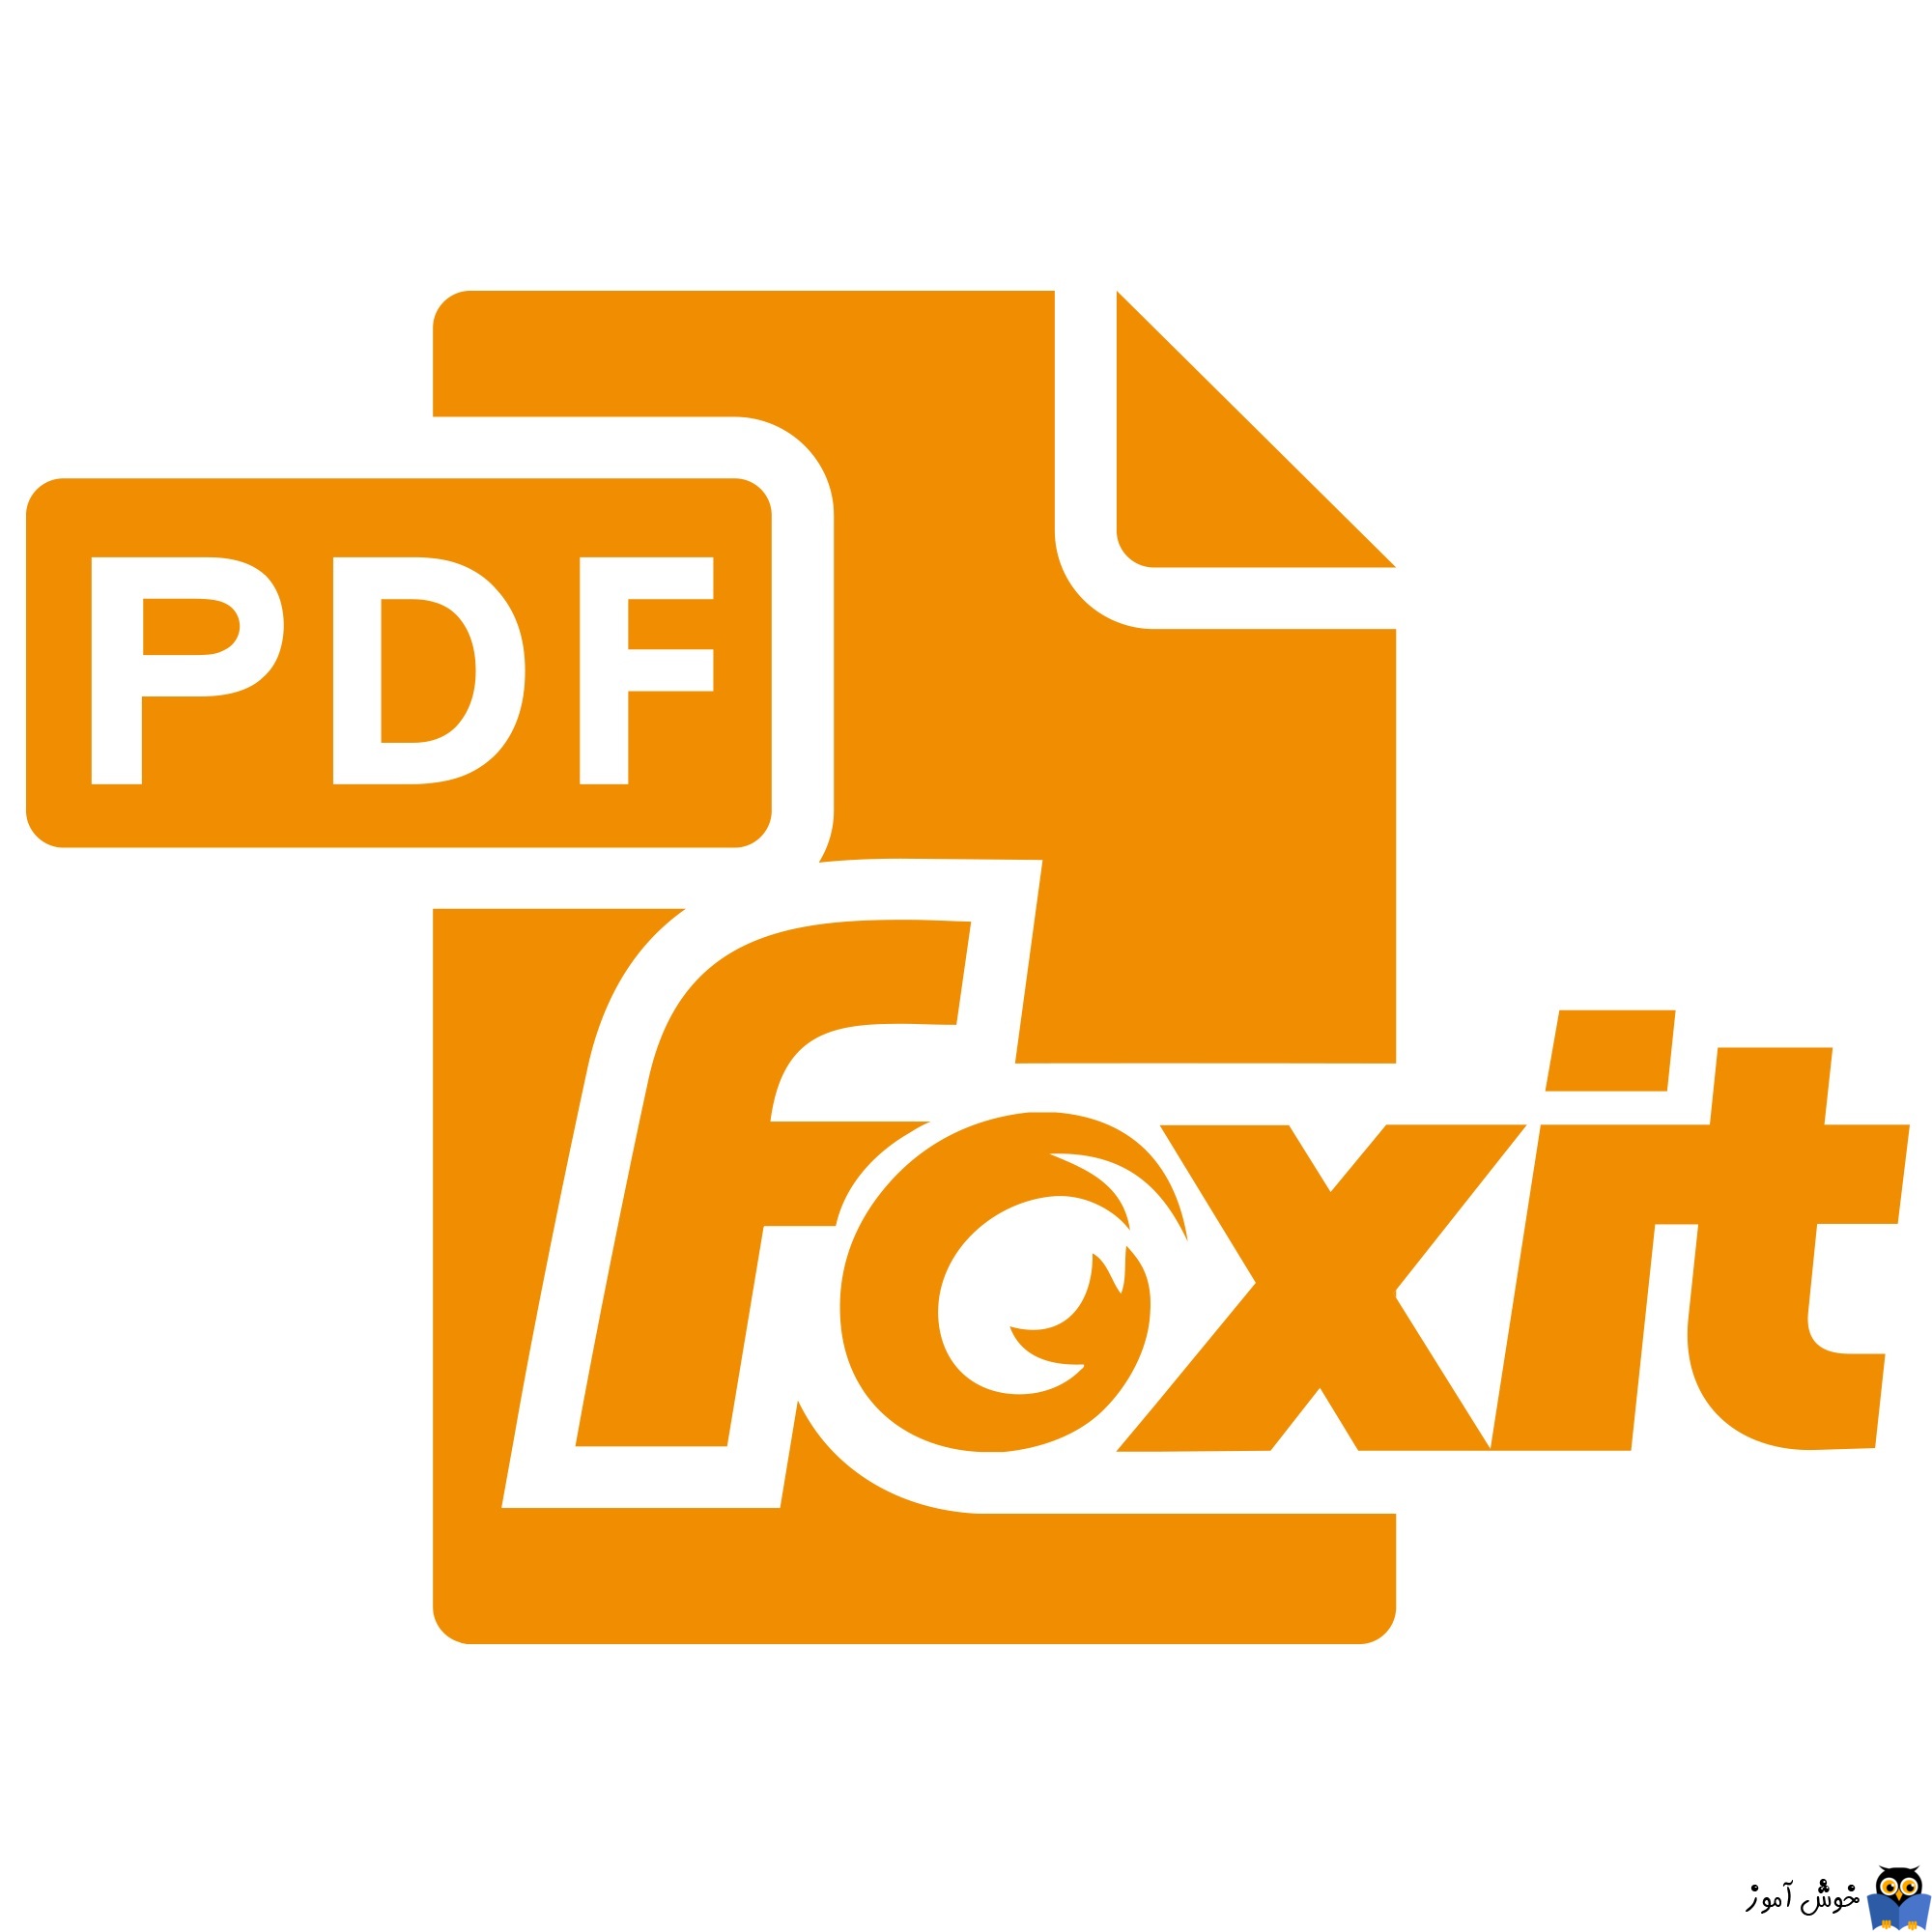 یافتن فایل PDF بر اساس متن یا کلمه در آن